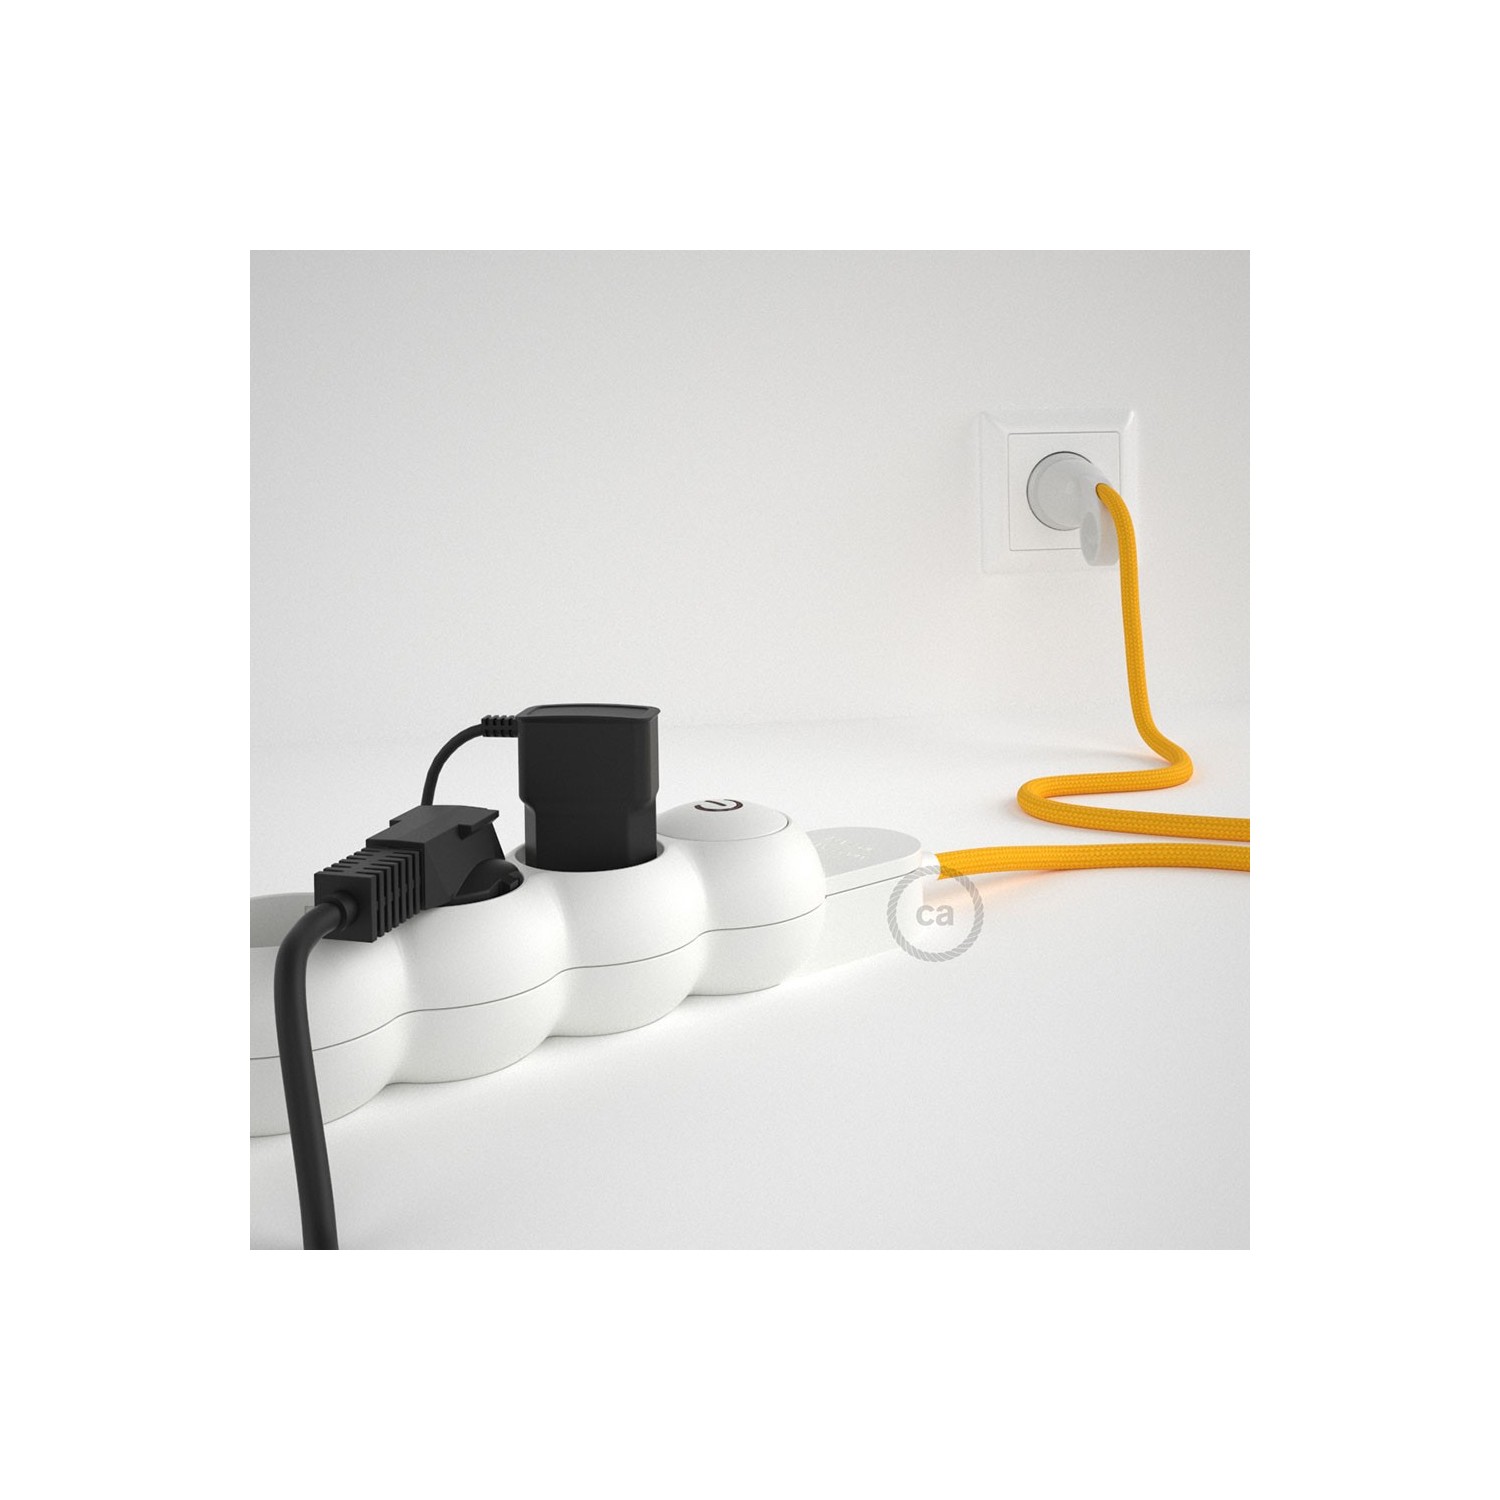 Prodlužovací textilný elektrický kabel - RM10 žlutý - se 4 zásuvkami a Schuko zástrčkou.